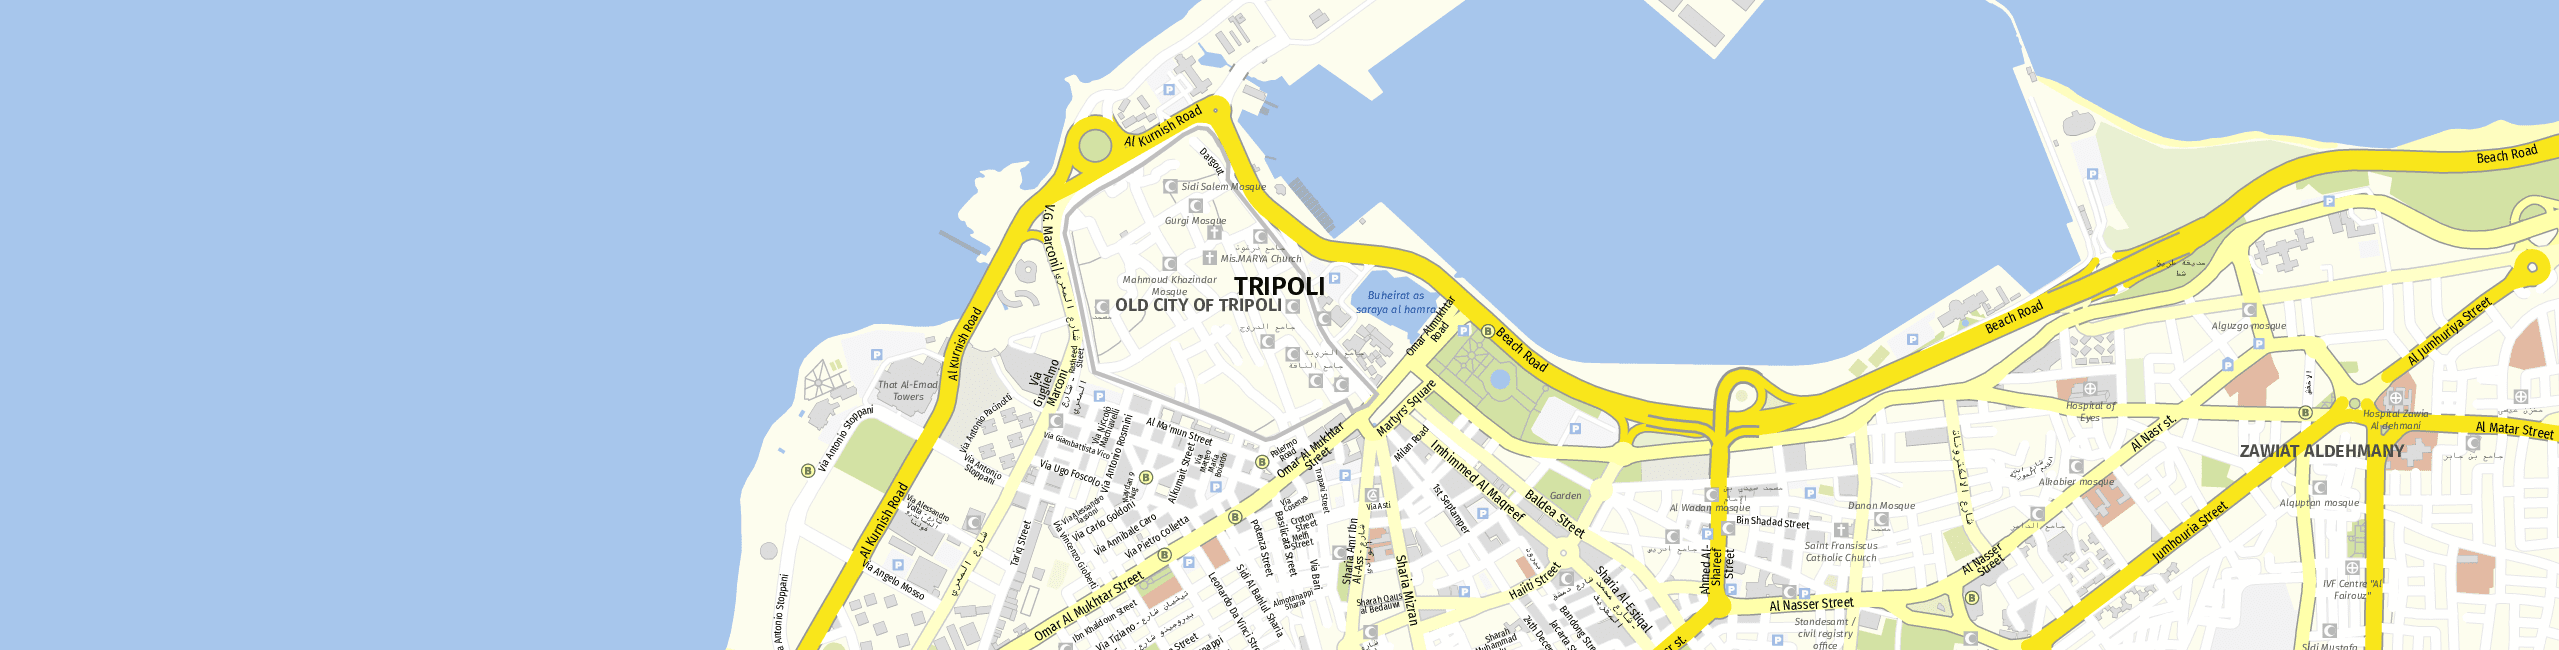 Stadtplan Tripoli zum Downloaden.